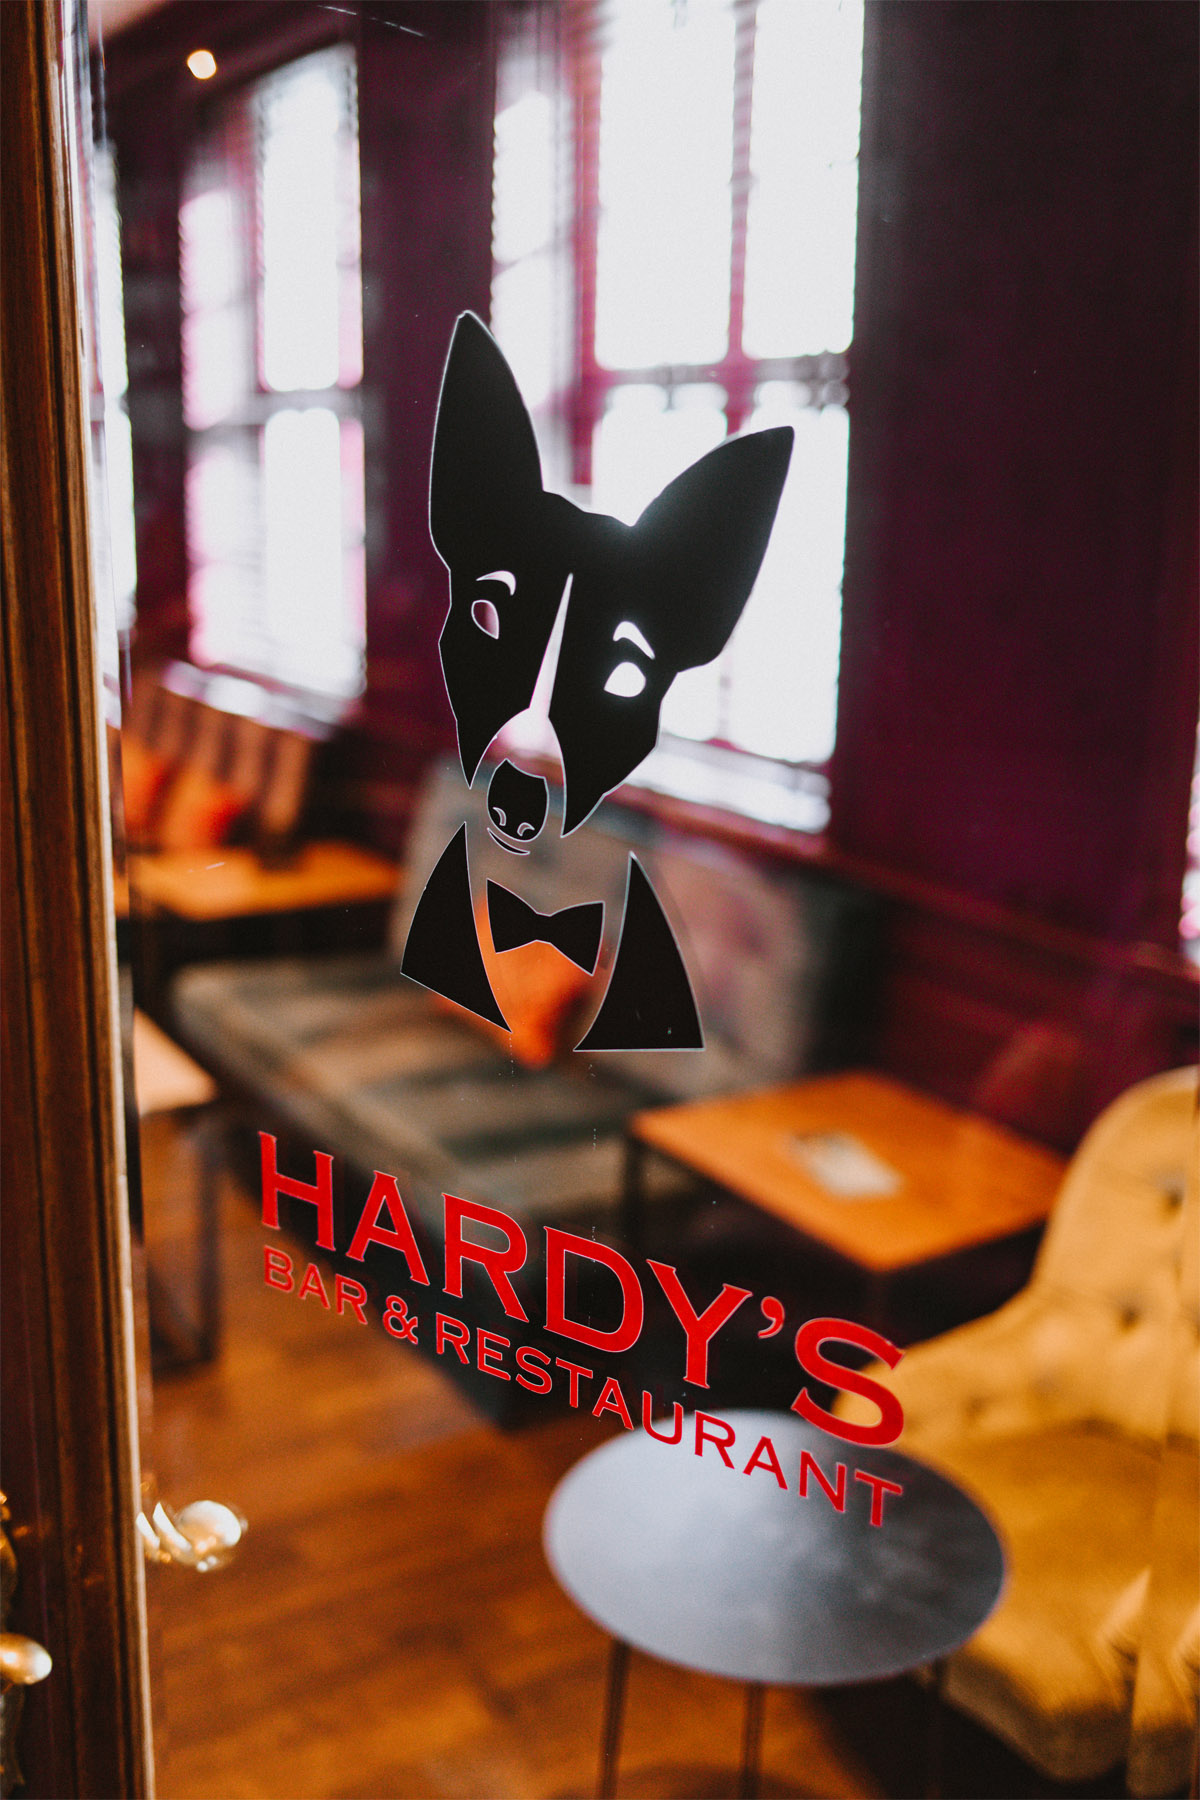 Hotel Stadt Hamburg: Hardy's Bar Eingangstür